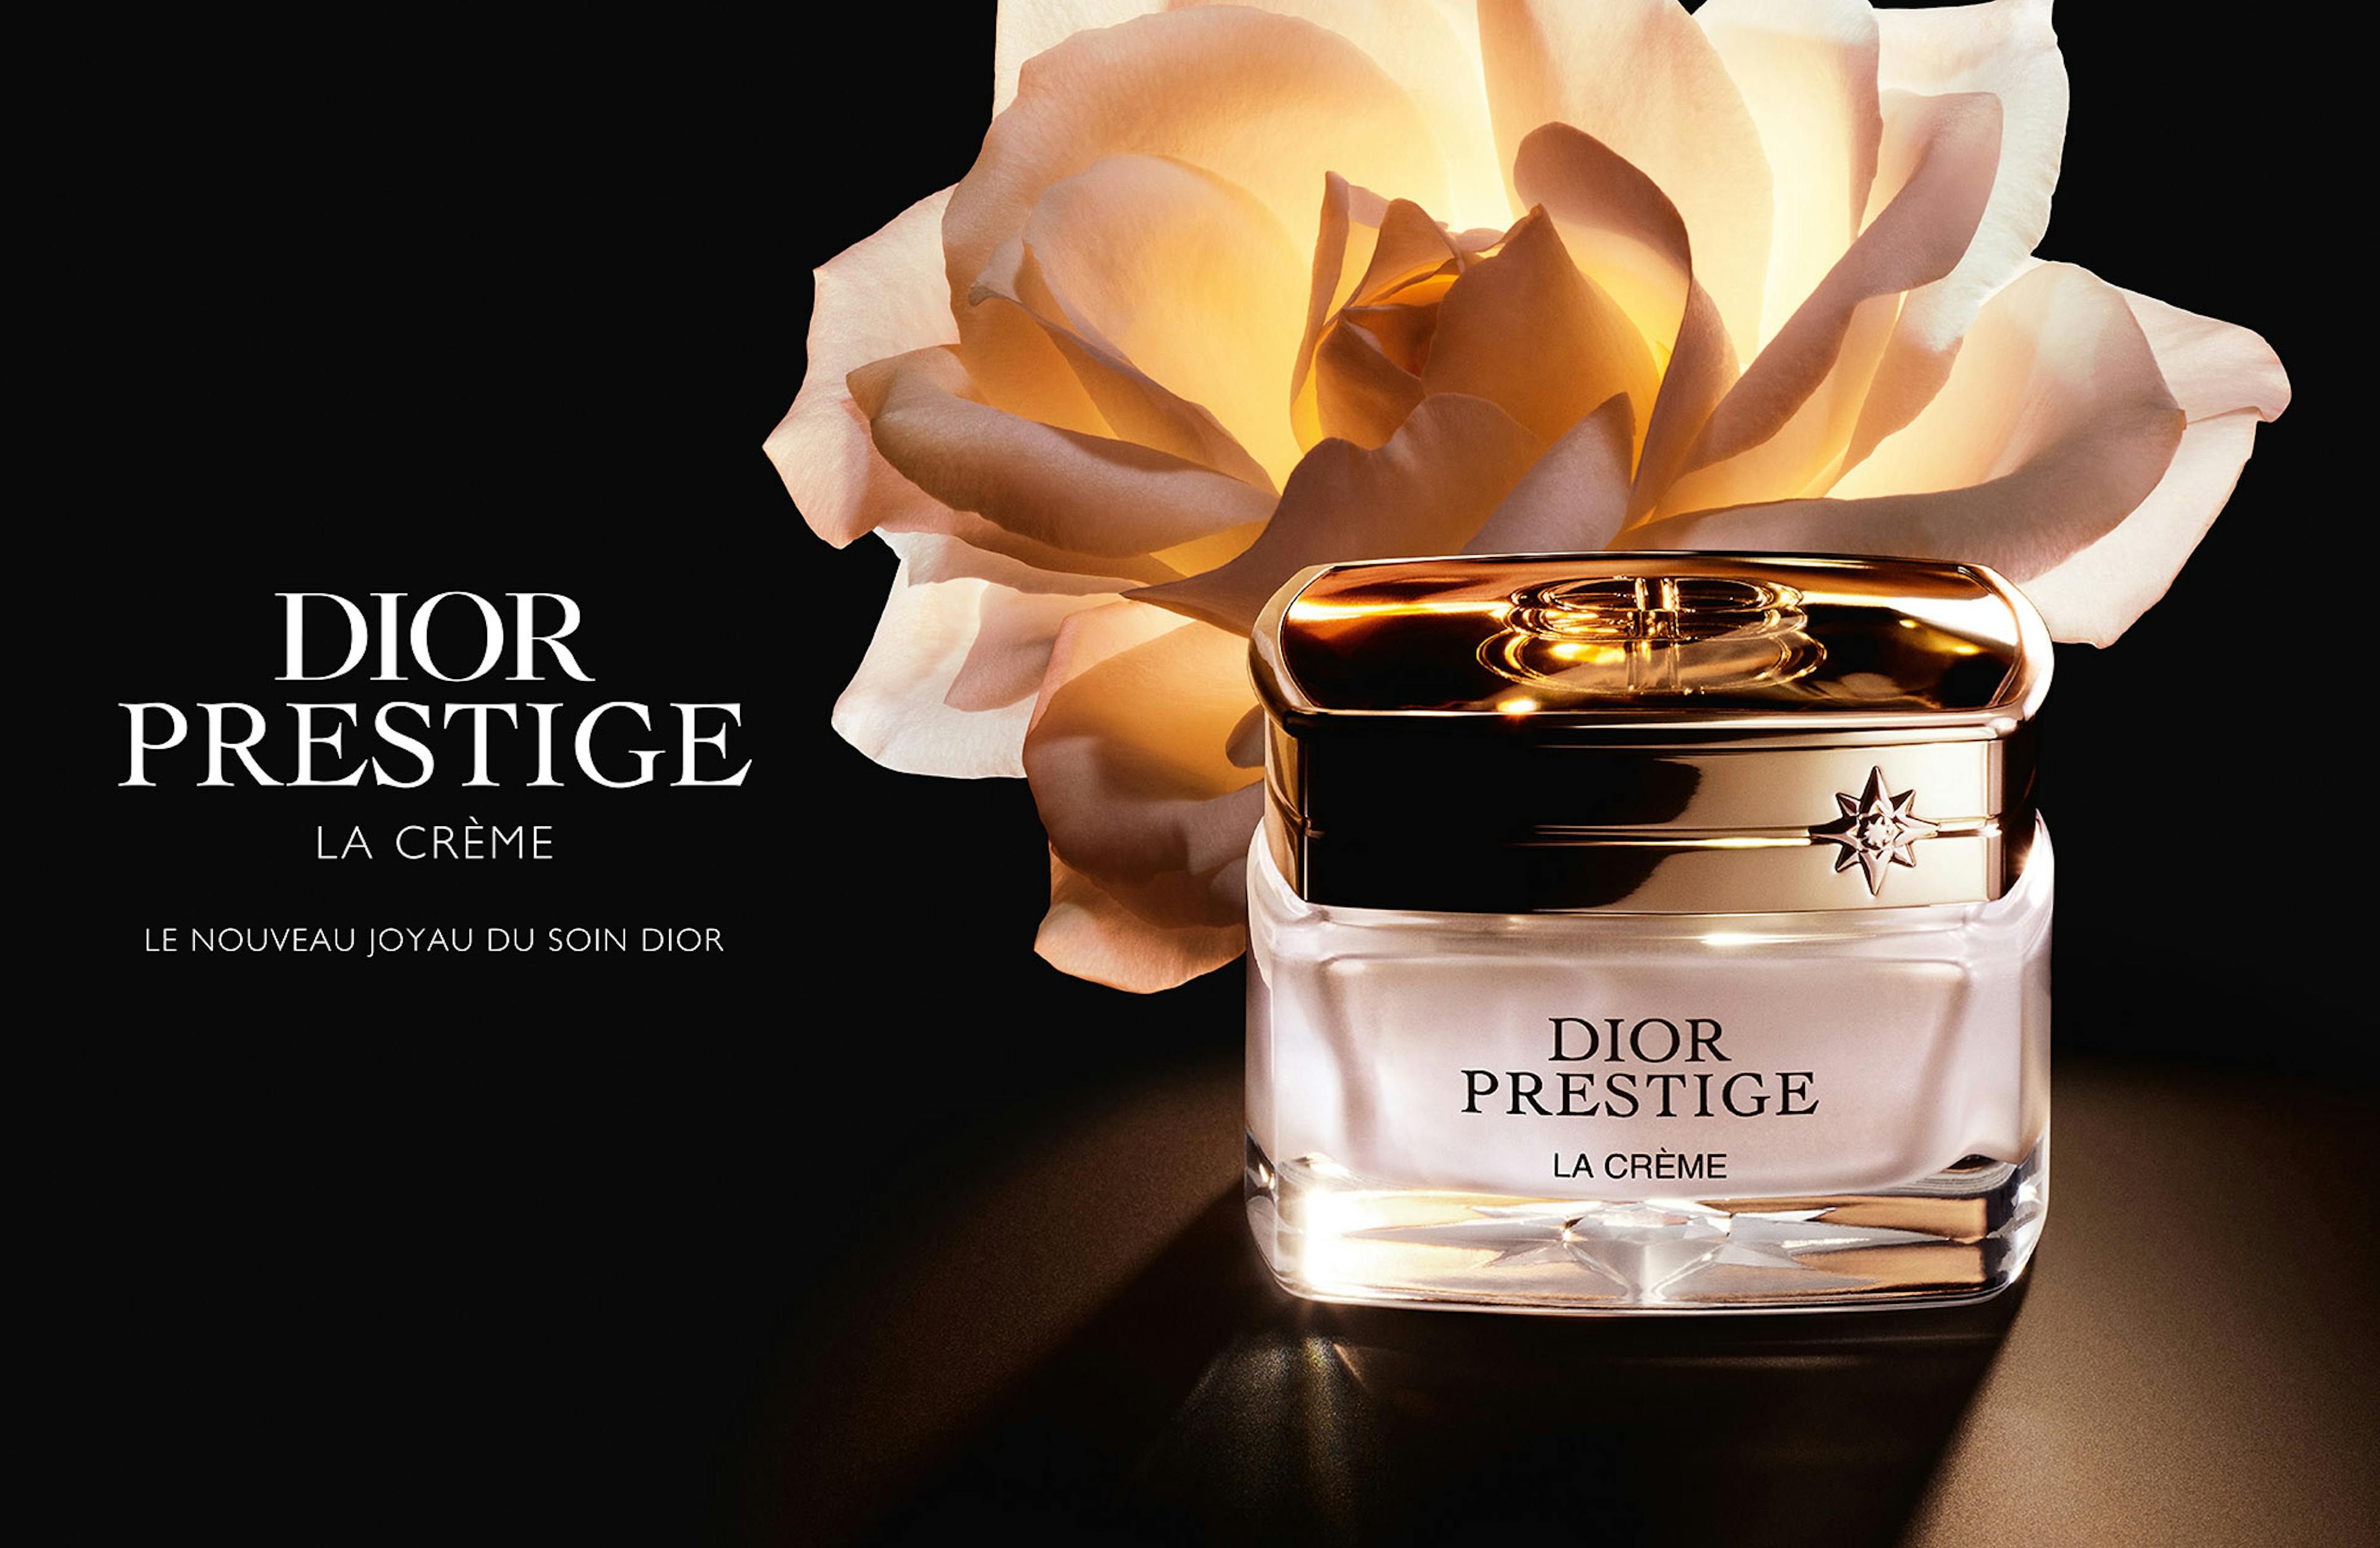 DIOR PRESTIGE © Parfums Christian Dior